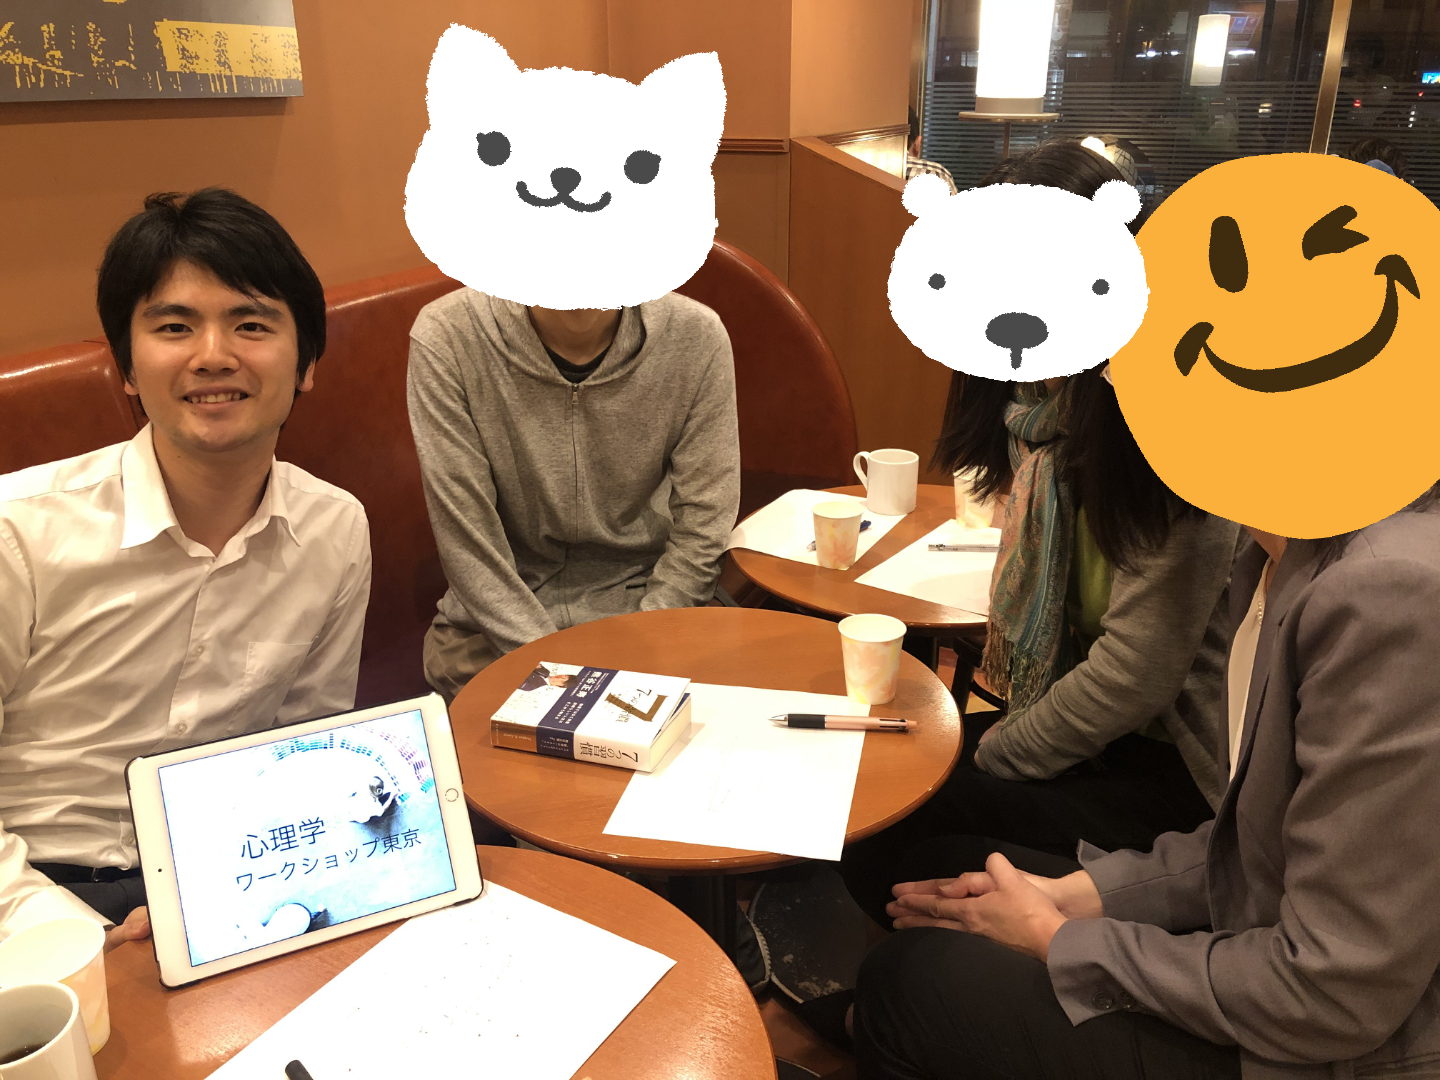 2019年10月17日 第1回目の自己分析セミナー東京